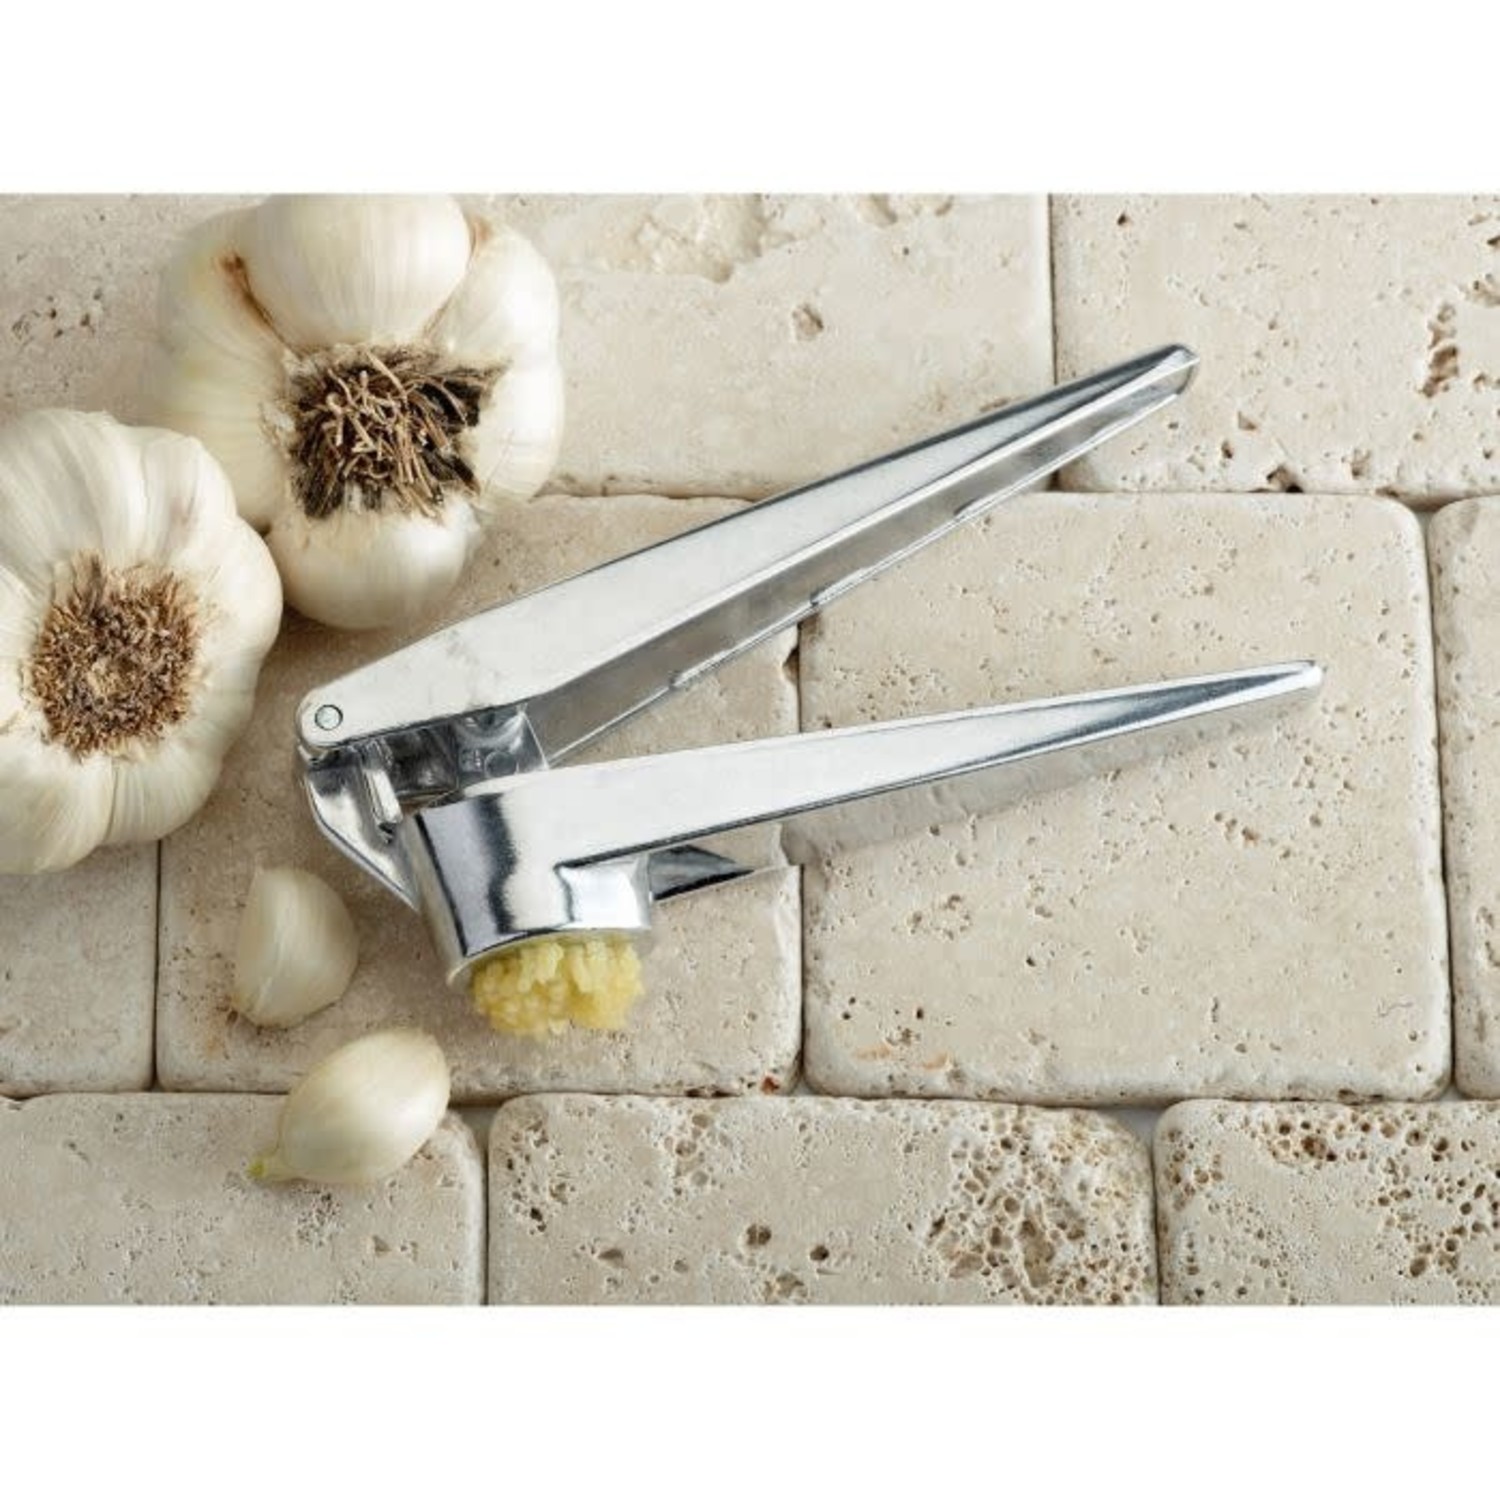 Zyliss Easy Clean Garlic Press